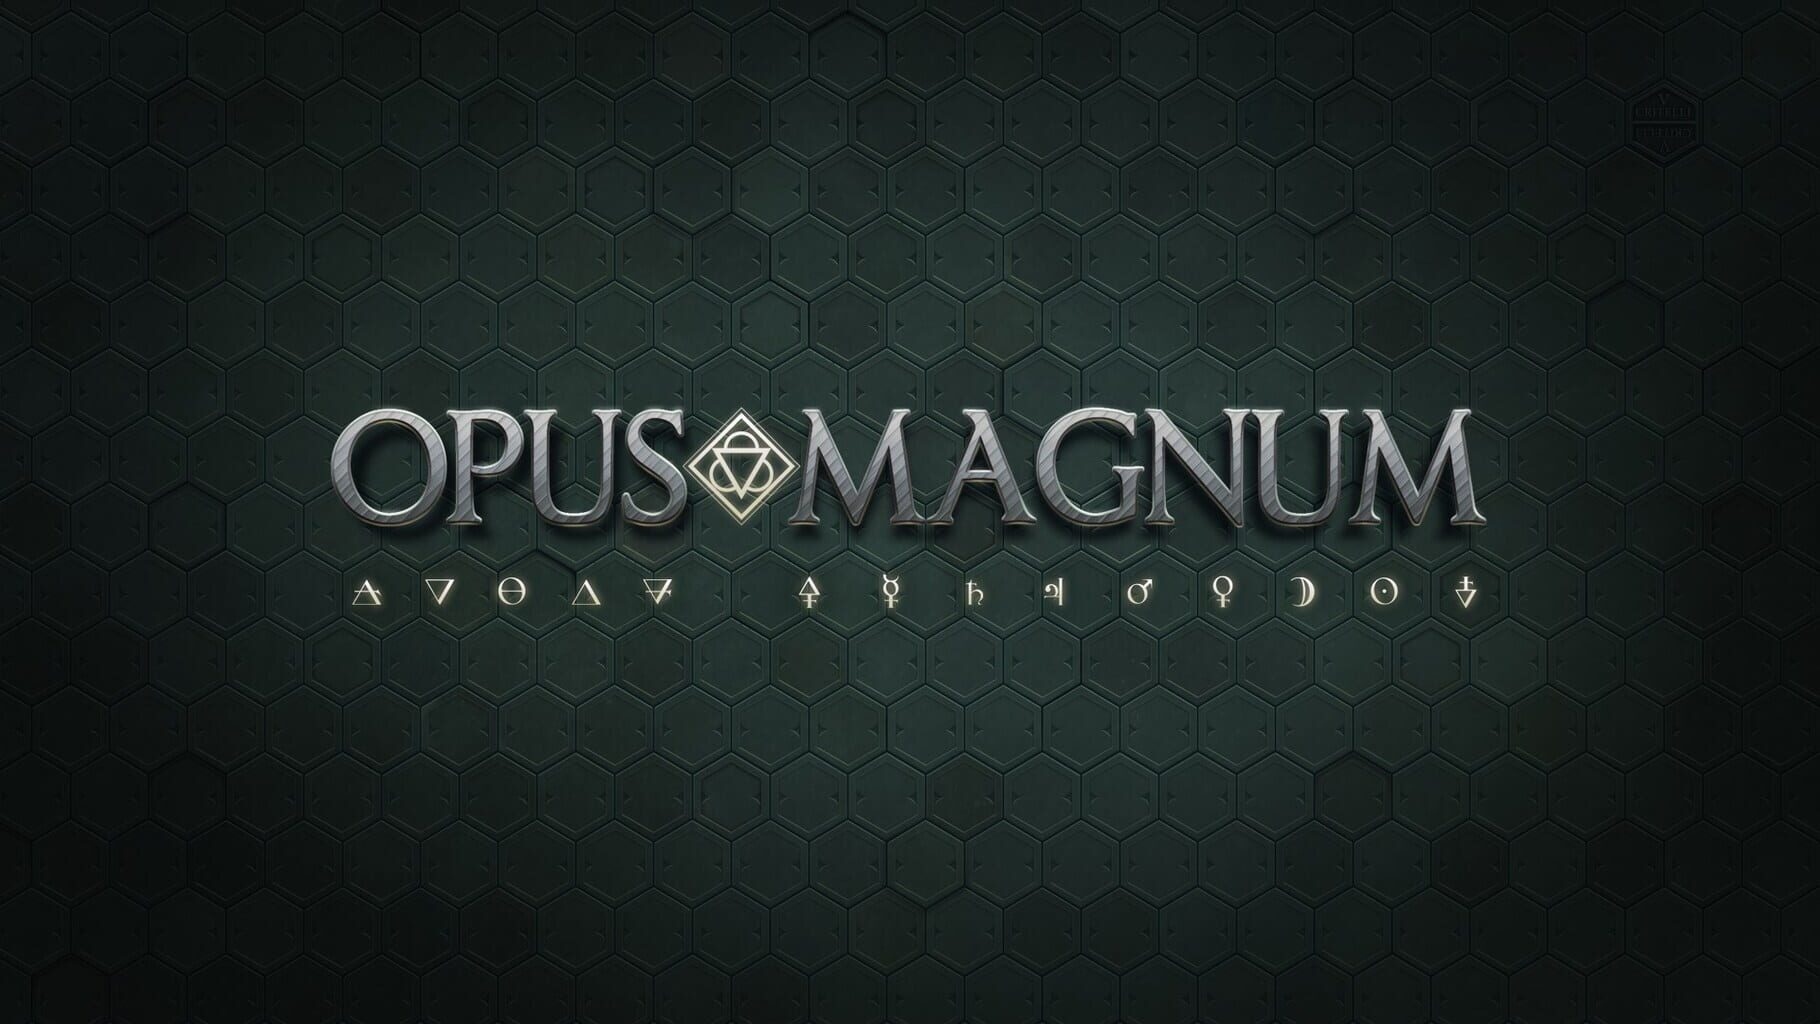 Artwork for Opus Magnum